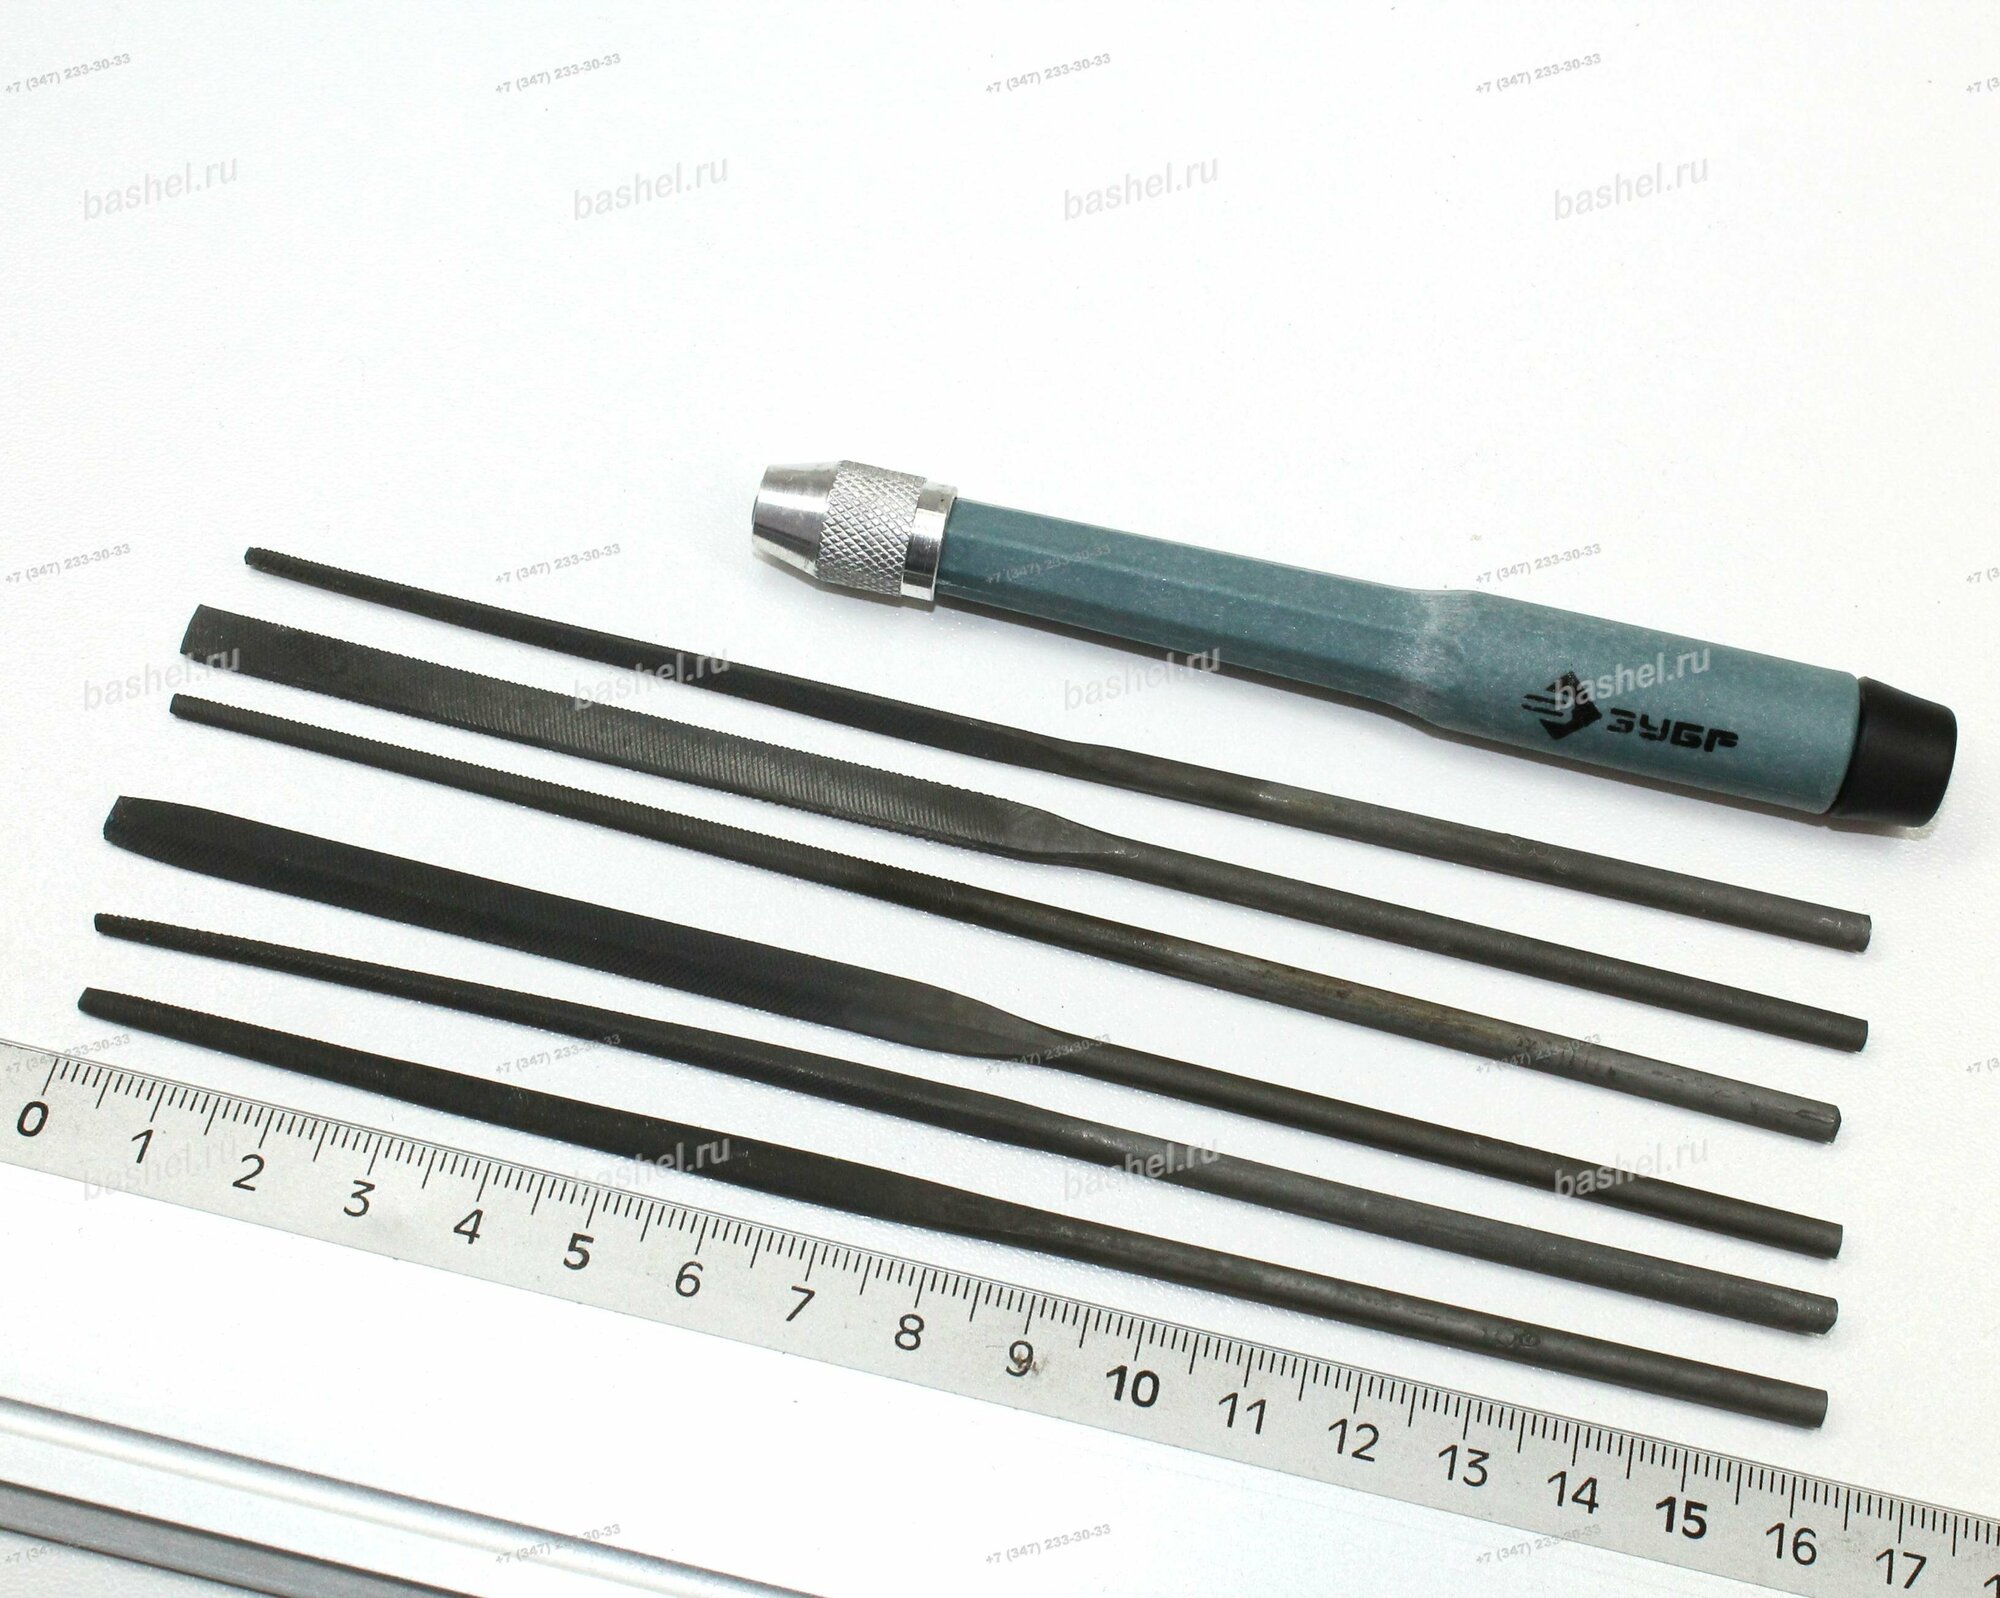 Набор надфилей ЗУБР Мастер 6 шт. 140 мм в чехле цанговая ручка Зубр